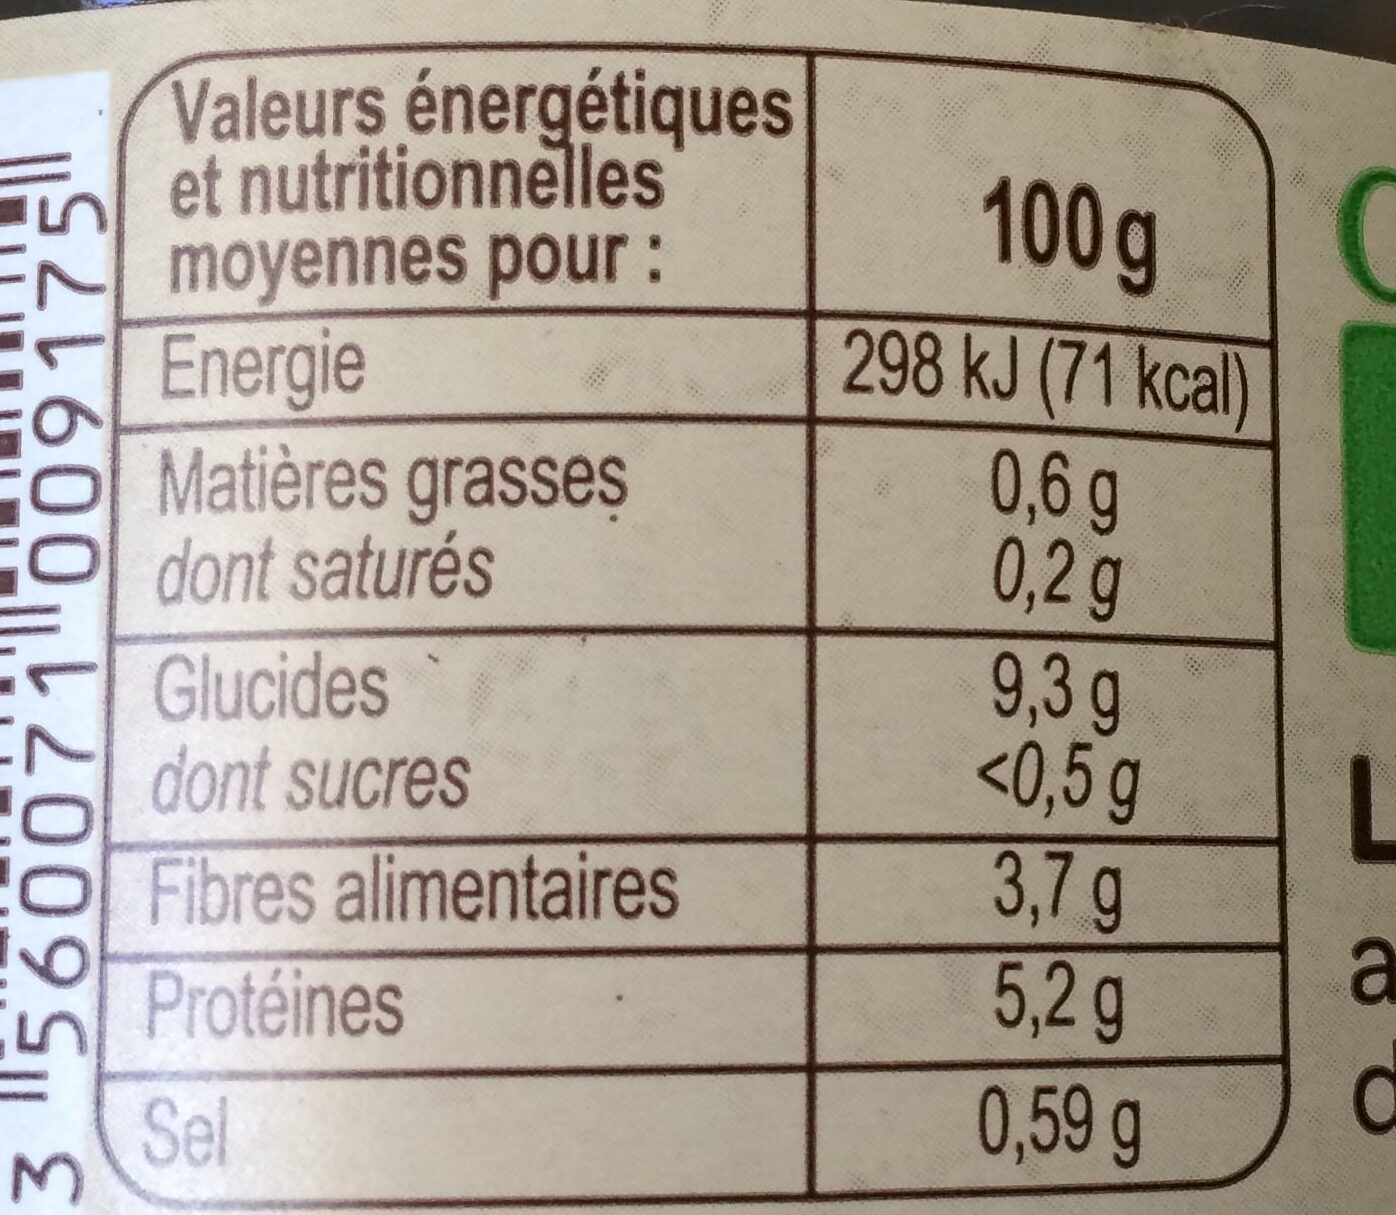 Lentilles vertes au sel de Noirmoutier - Voedingswaarden - fr